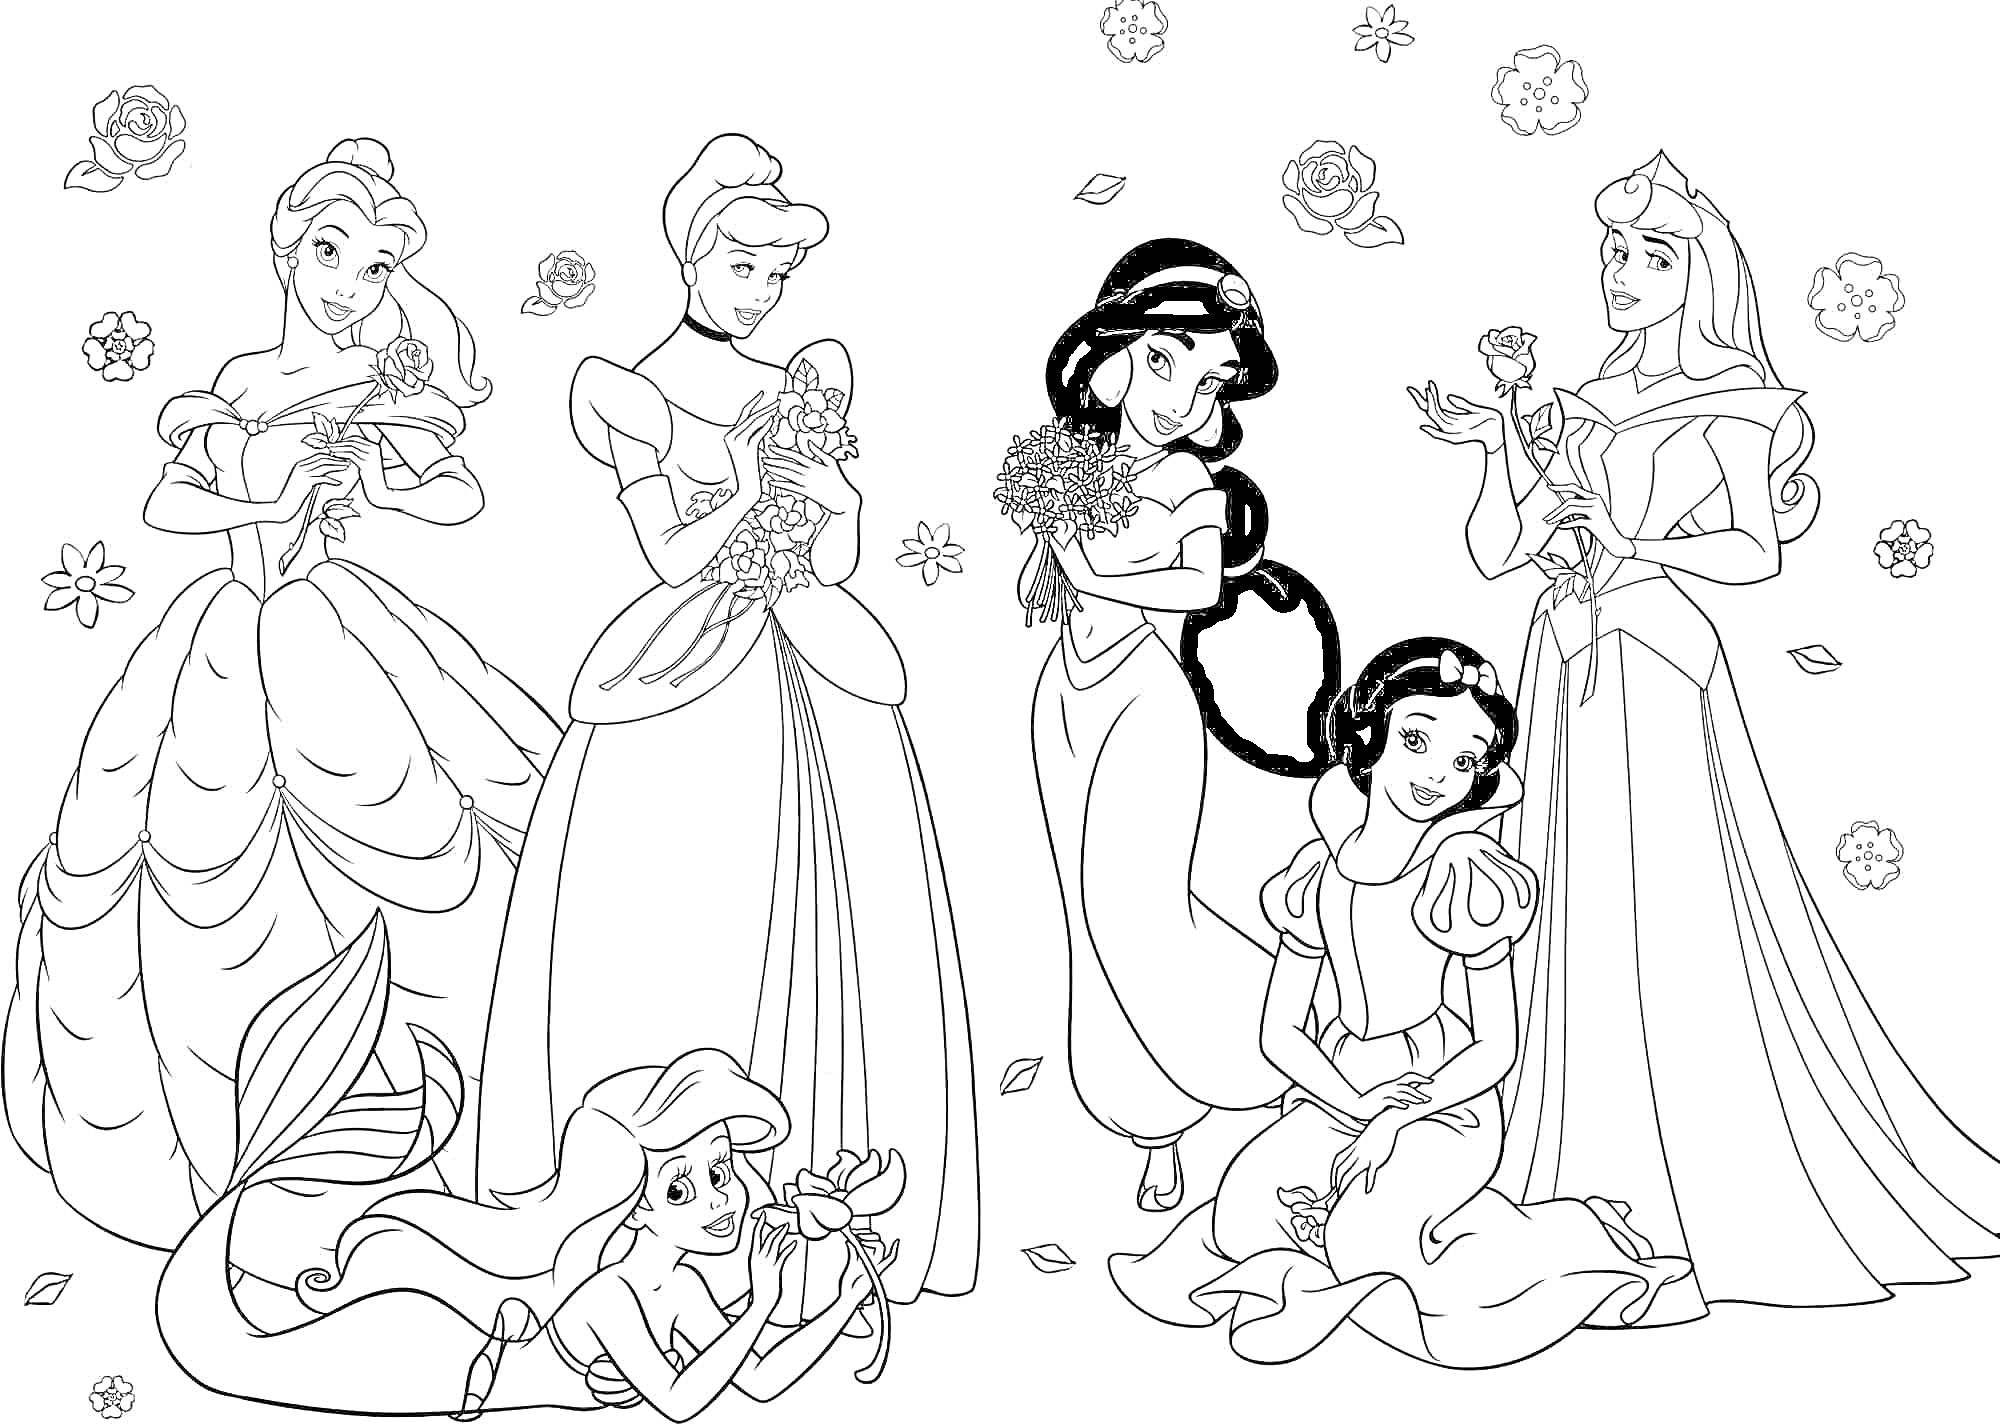 Раскраска Принцессы с цветами - шесть принцесс, стоящие и сидящие, в длинных платьях, с цветами в руках и вокруг, включая русалку на переднем плане